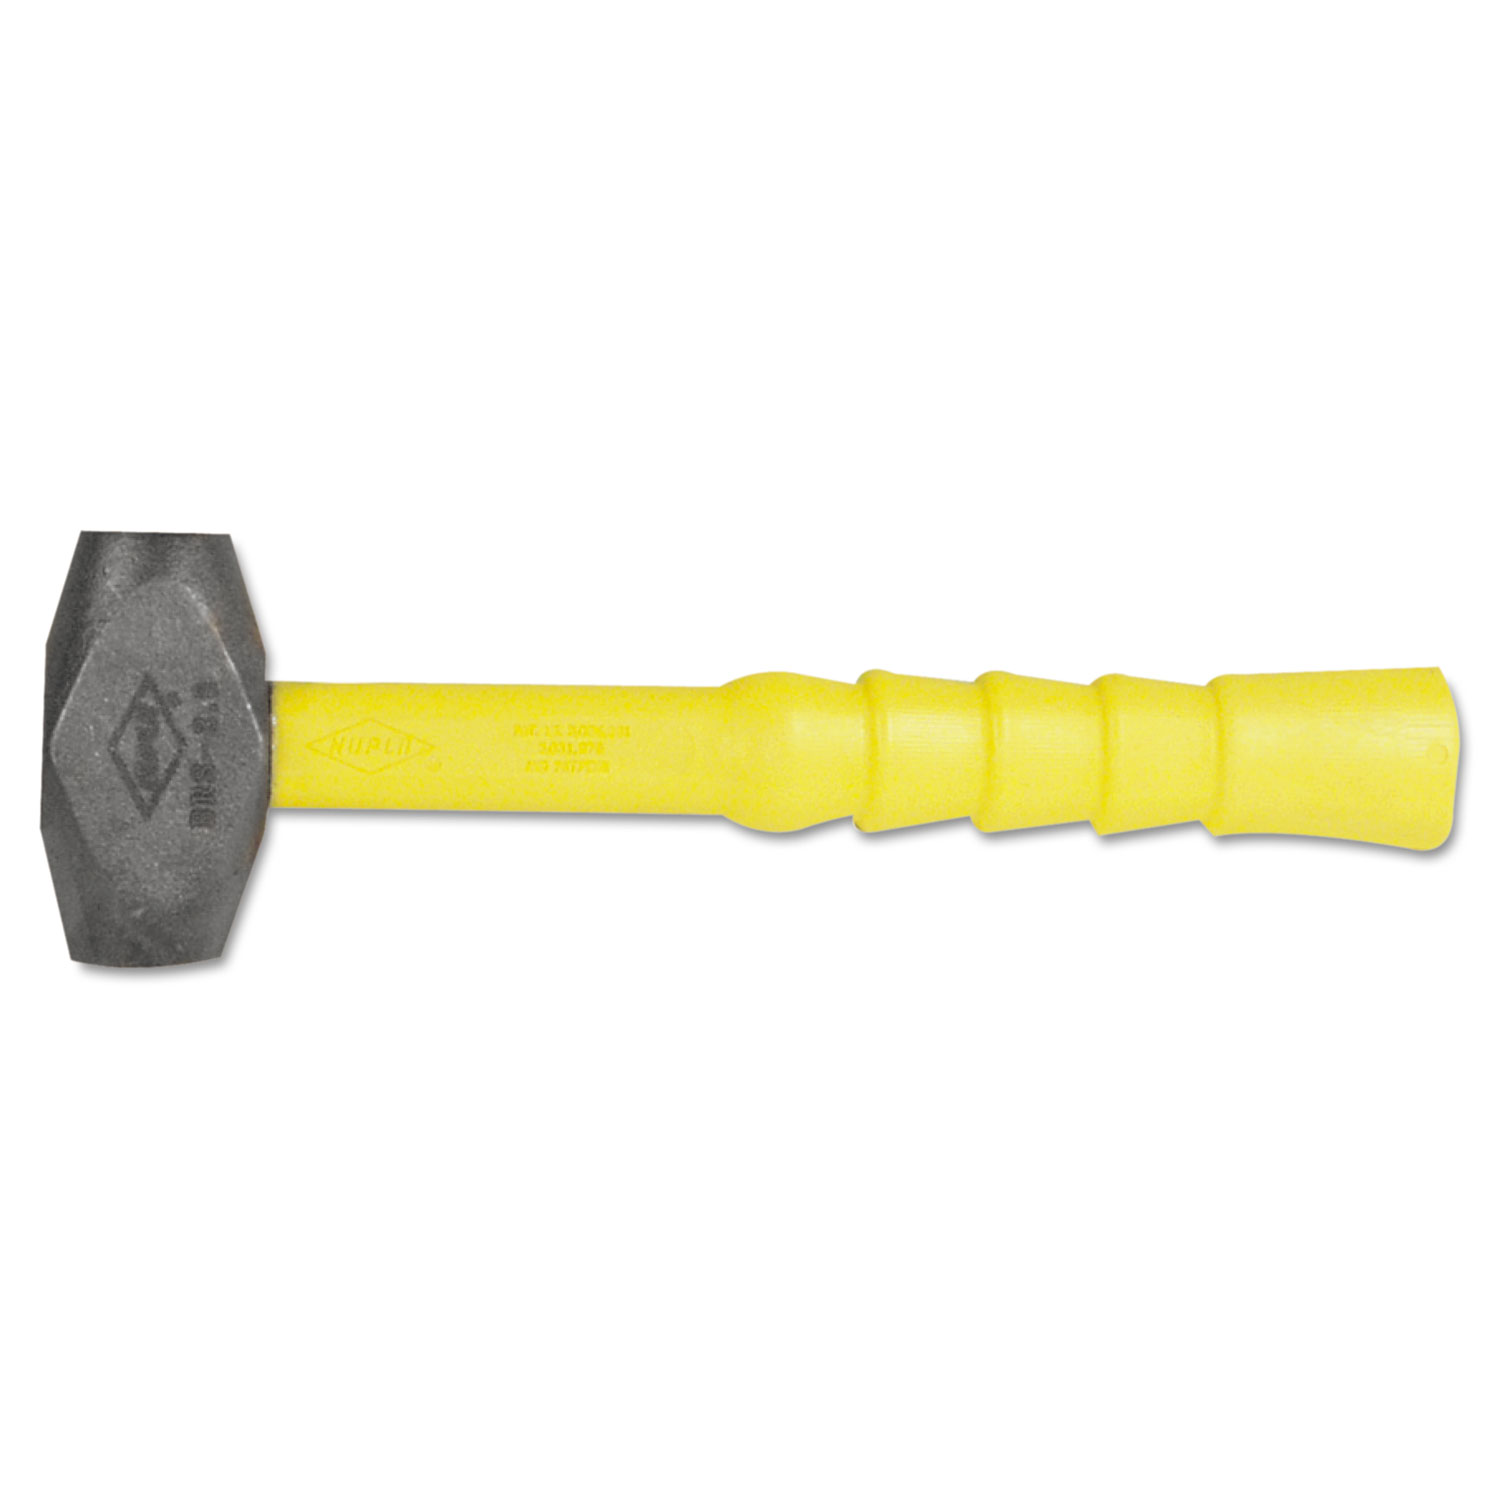 Ergo Power Brass-Head Hammer, 4lb, 12 Handle